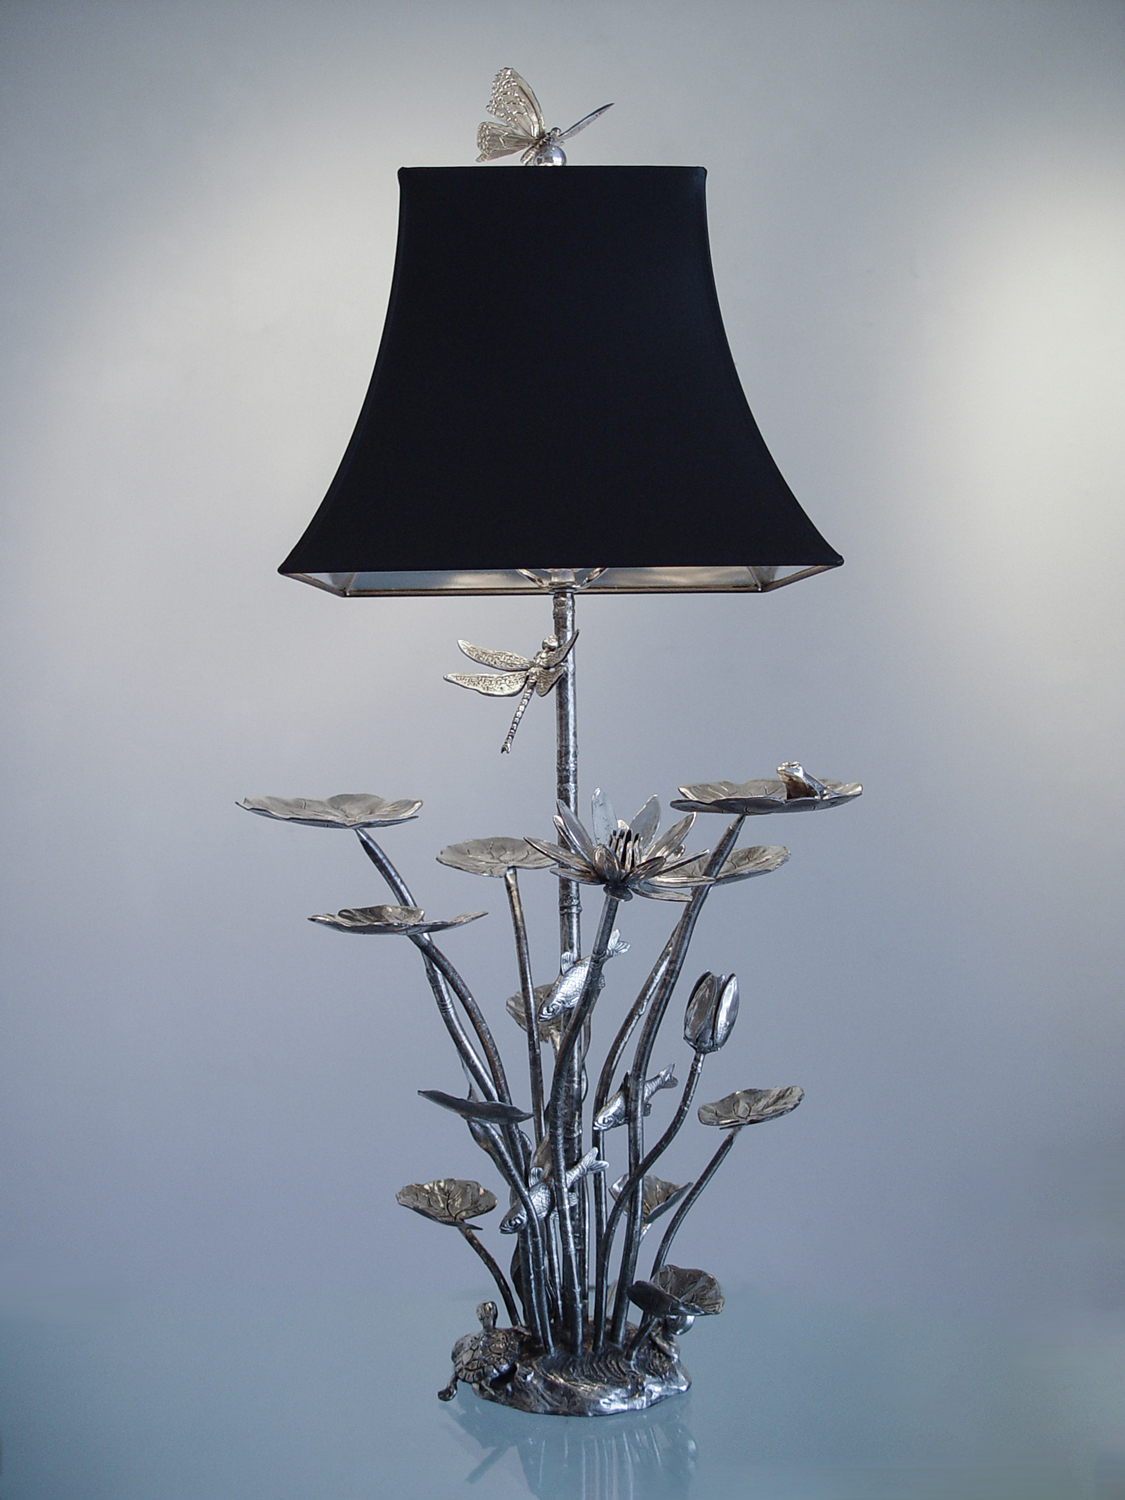 Aquarium Lamp by Charles H. Reinike III